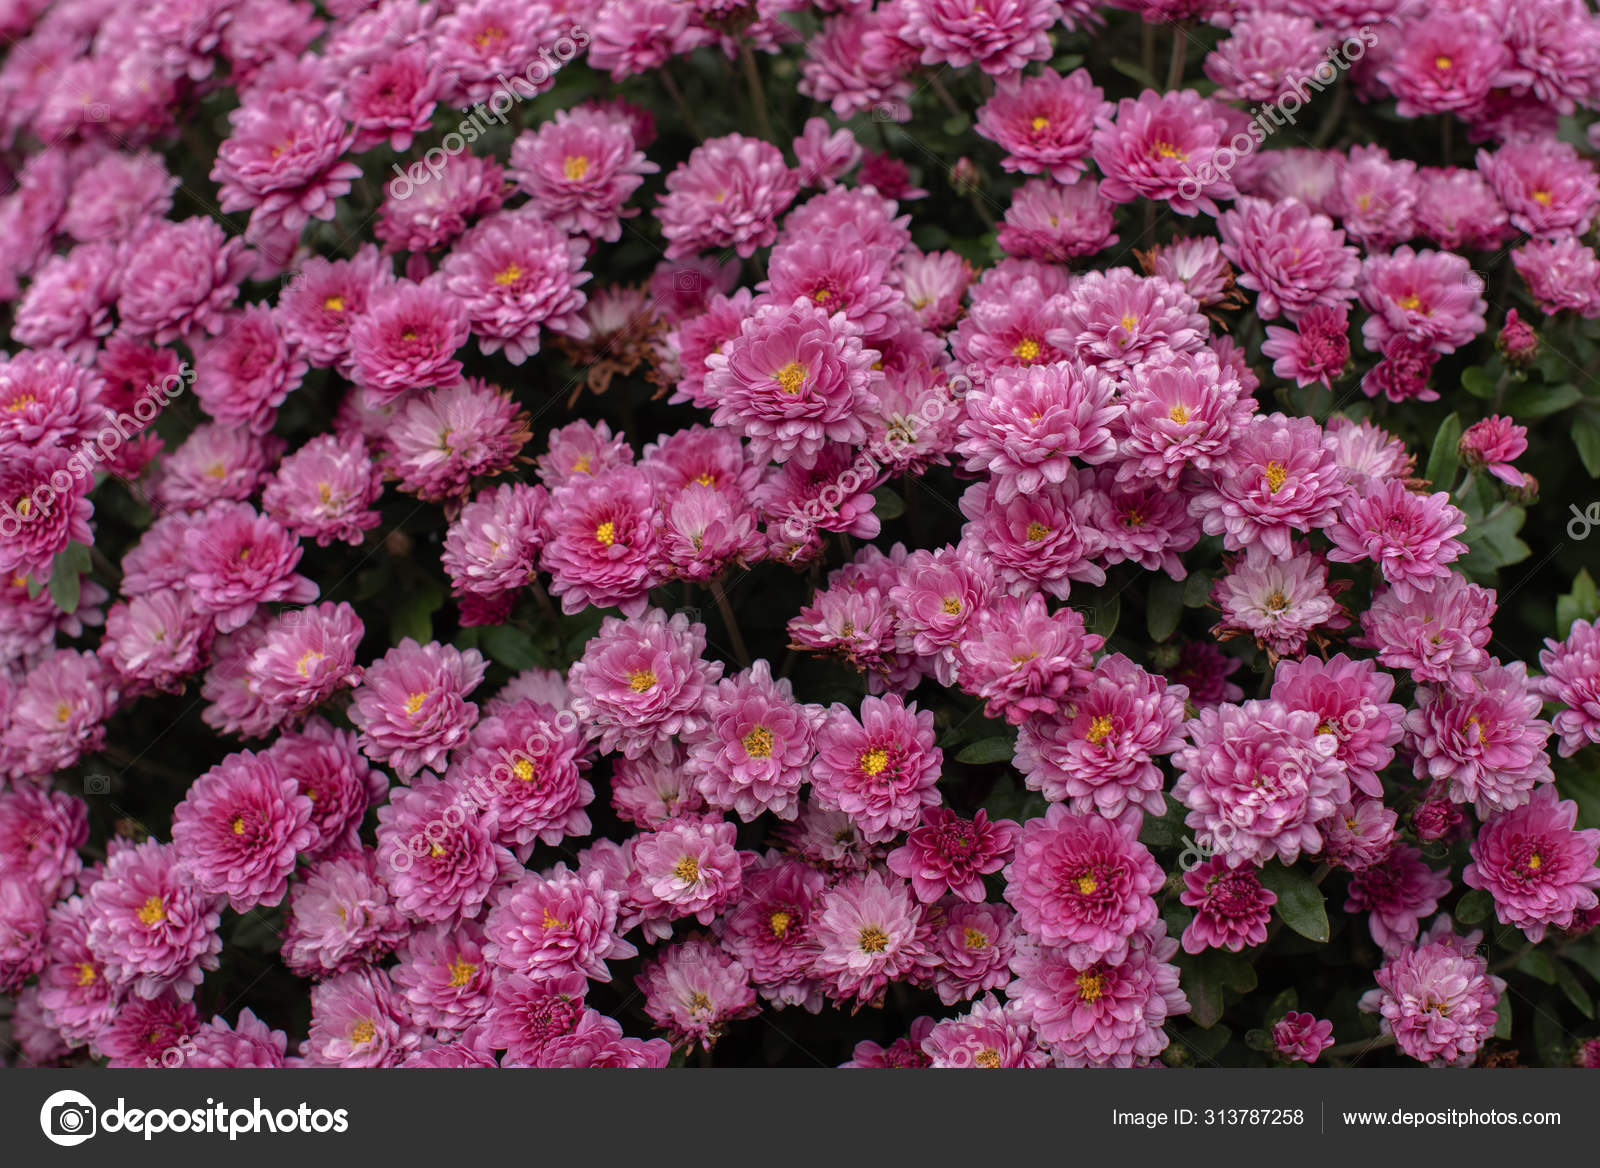 Florists Daisy Chrysanthemum Morifolium In Garden Stock Photo C Kapinosova 313787258